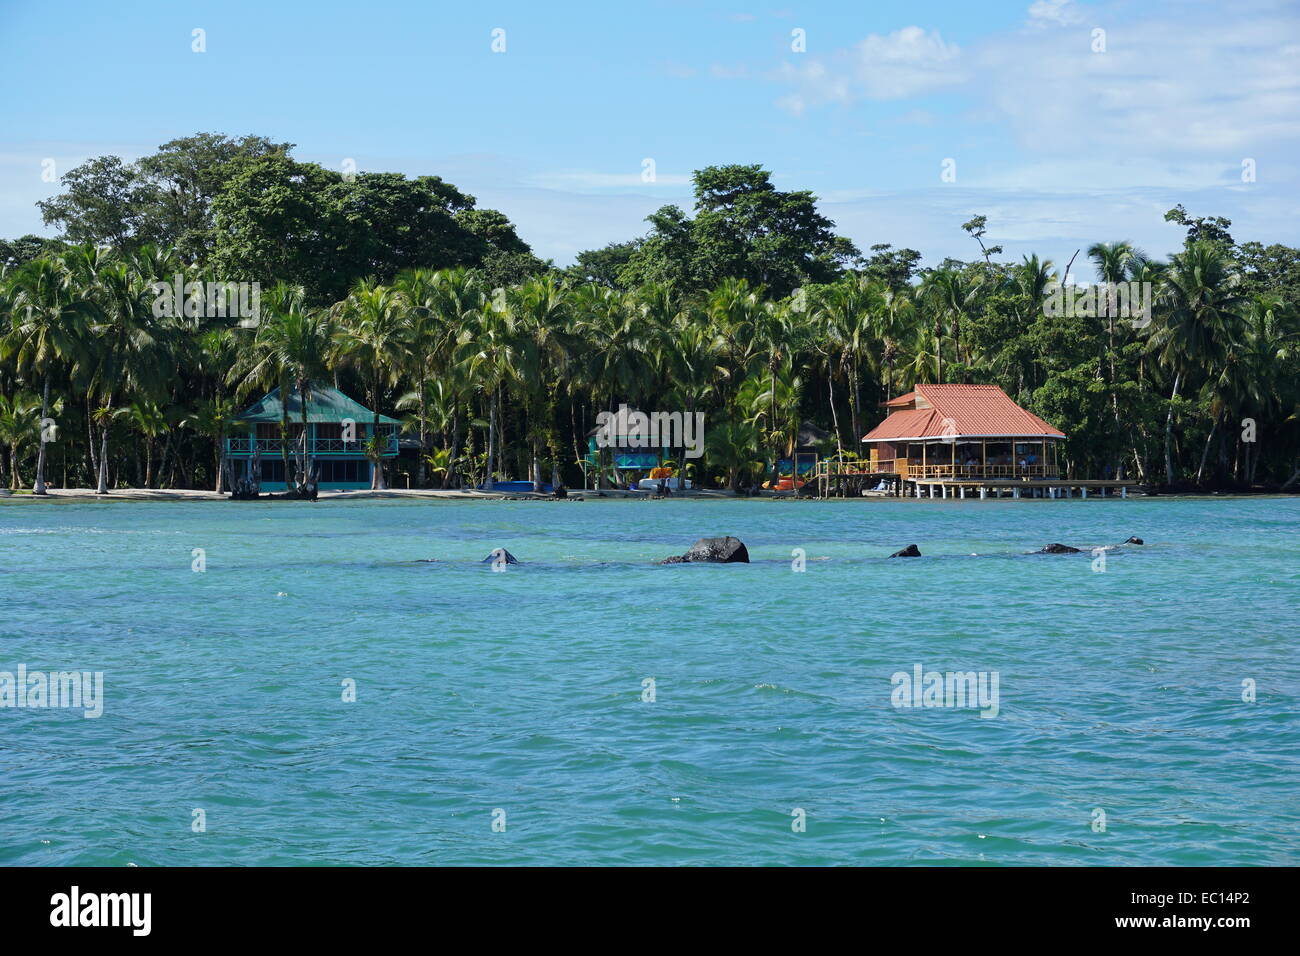 Casa sul lungomare e il ristorante sulla spiaggia di Isola di Carenero, Caraibi, Bocas del Toro, Panama America centrale Foto Stock